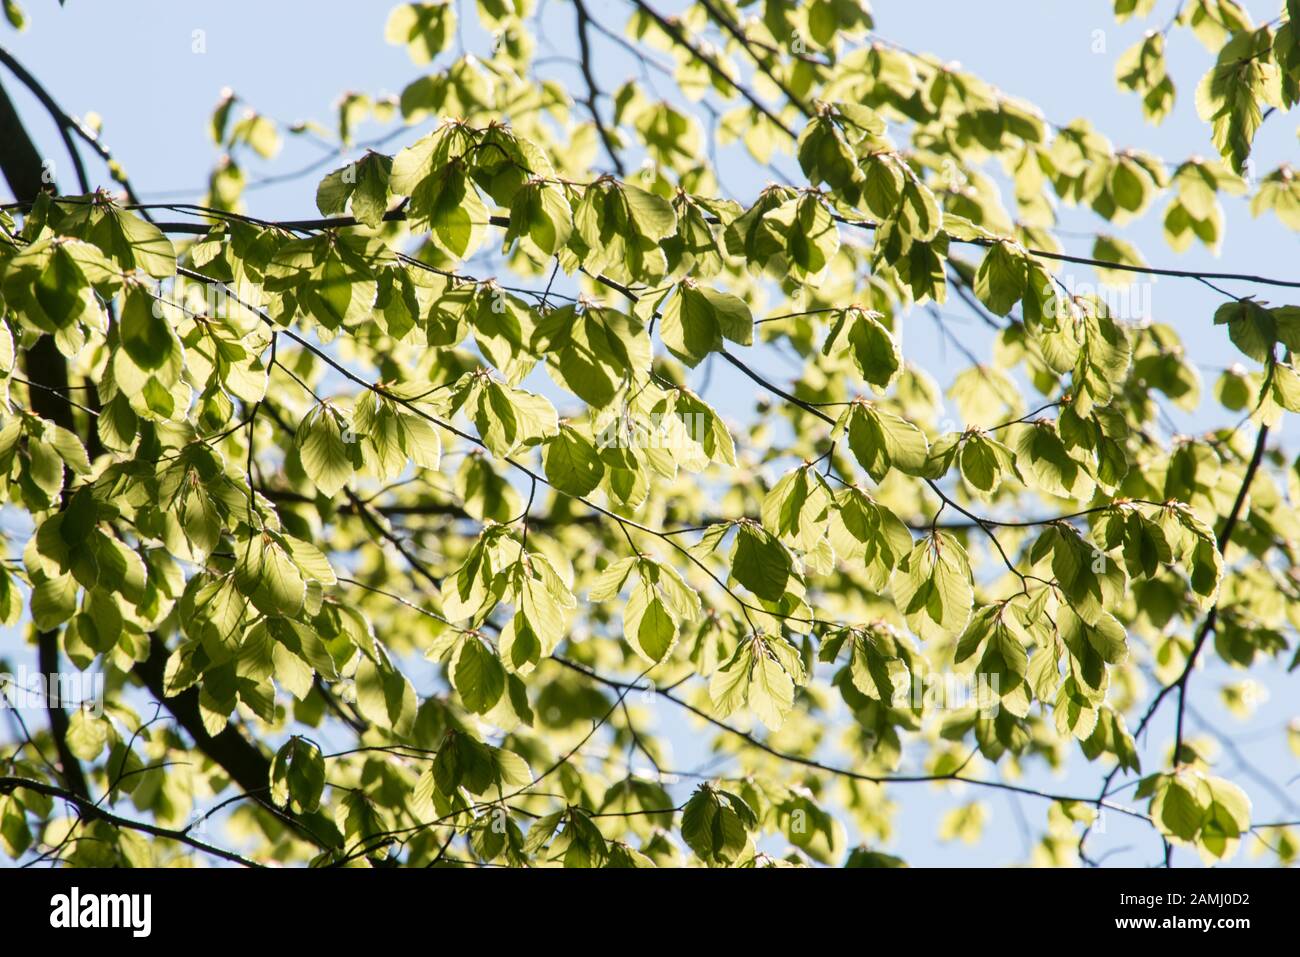 Detalle de las hojas de un árbol de haya en primavera con hojas verdes frescas Foto de stock